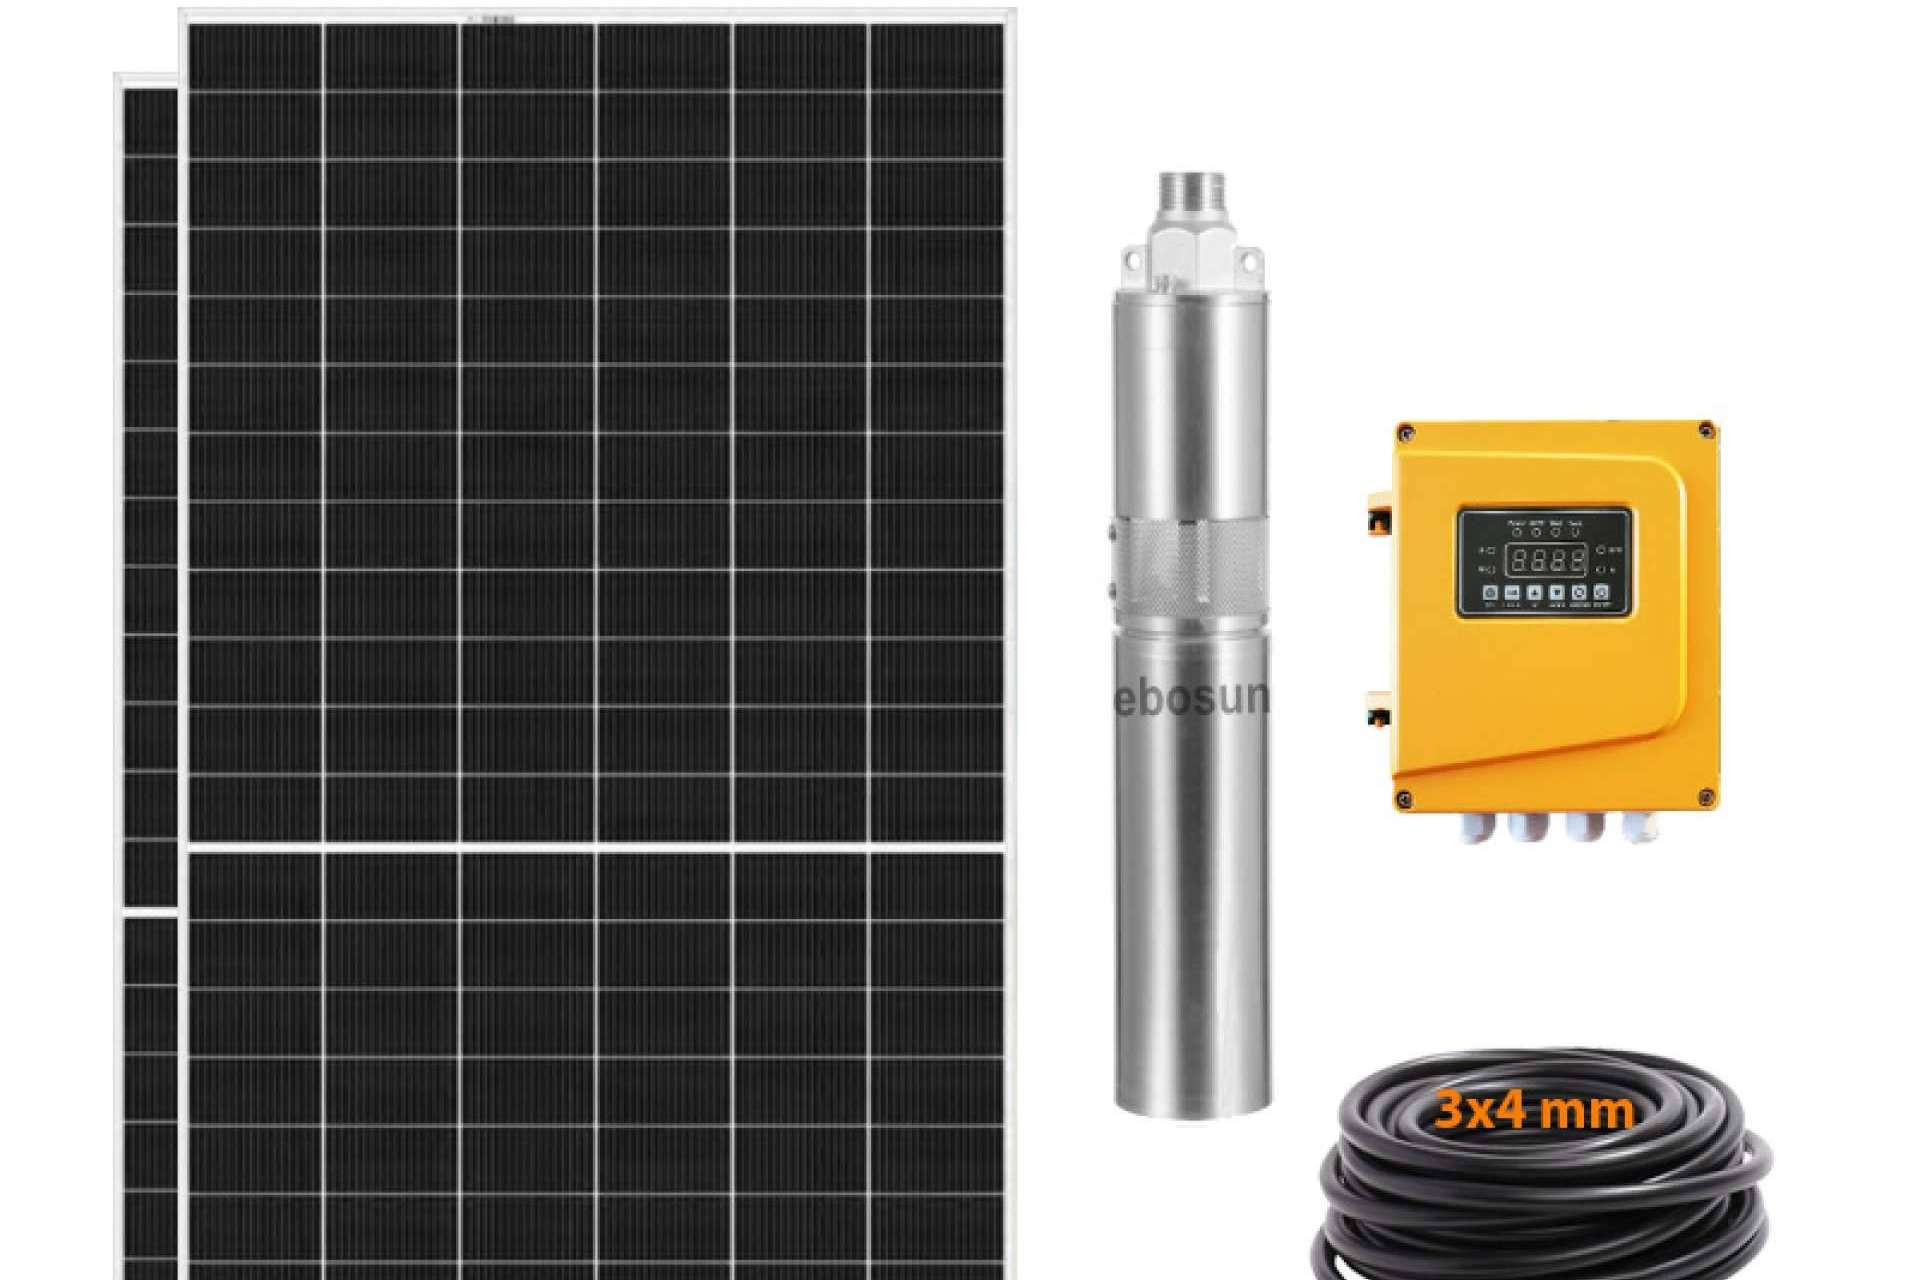  Solarbex, la tienda online de energía solar donde encontrar kits de bombeo solar 